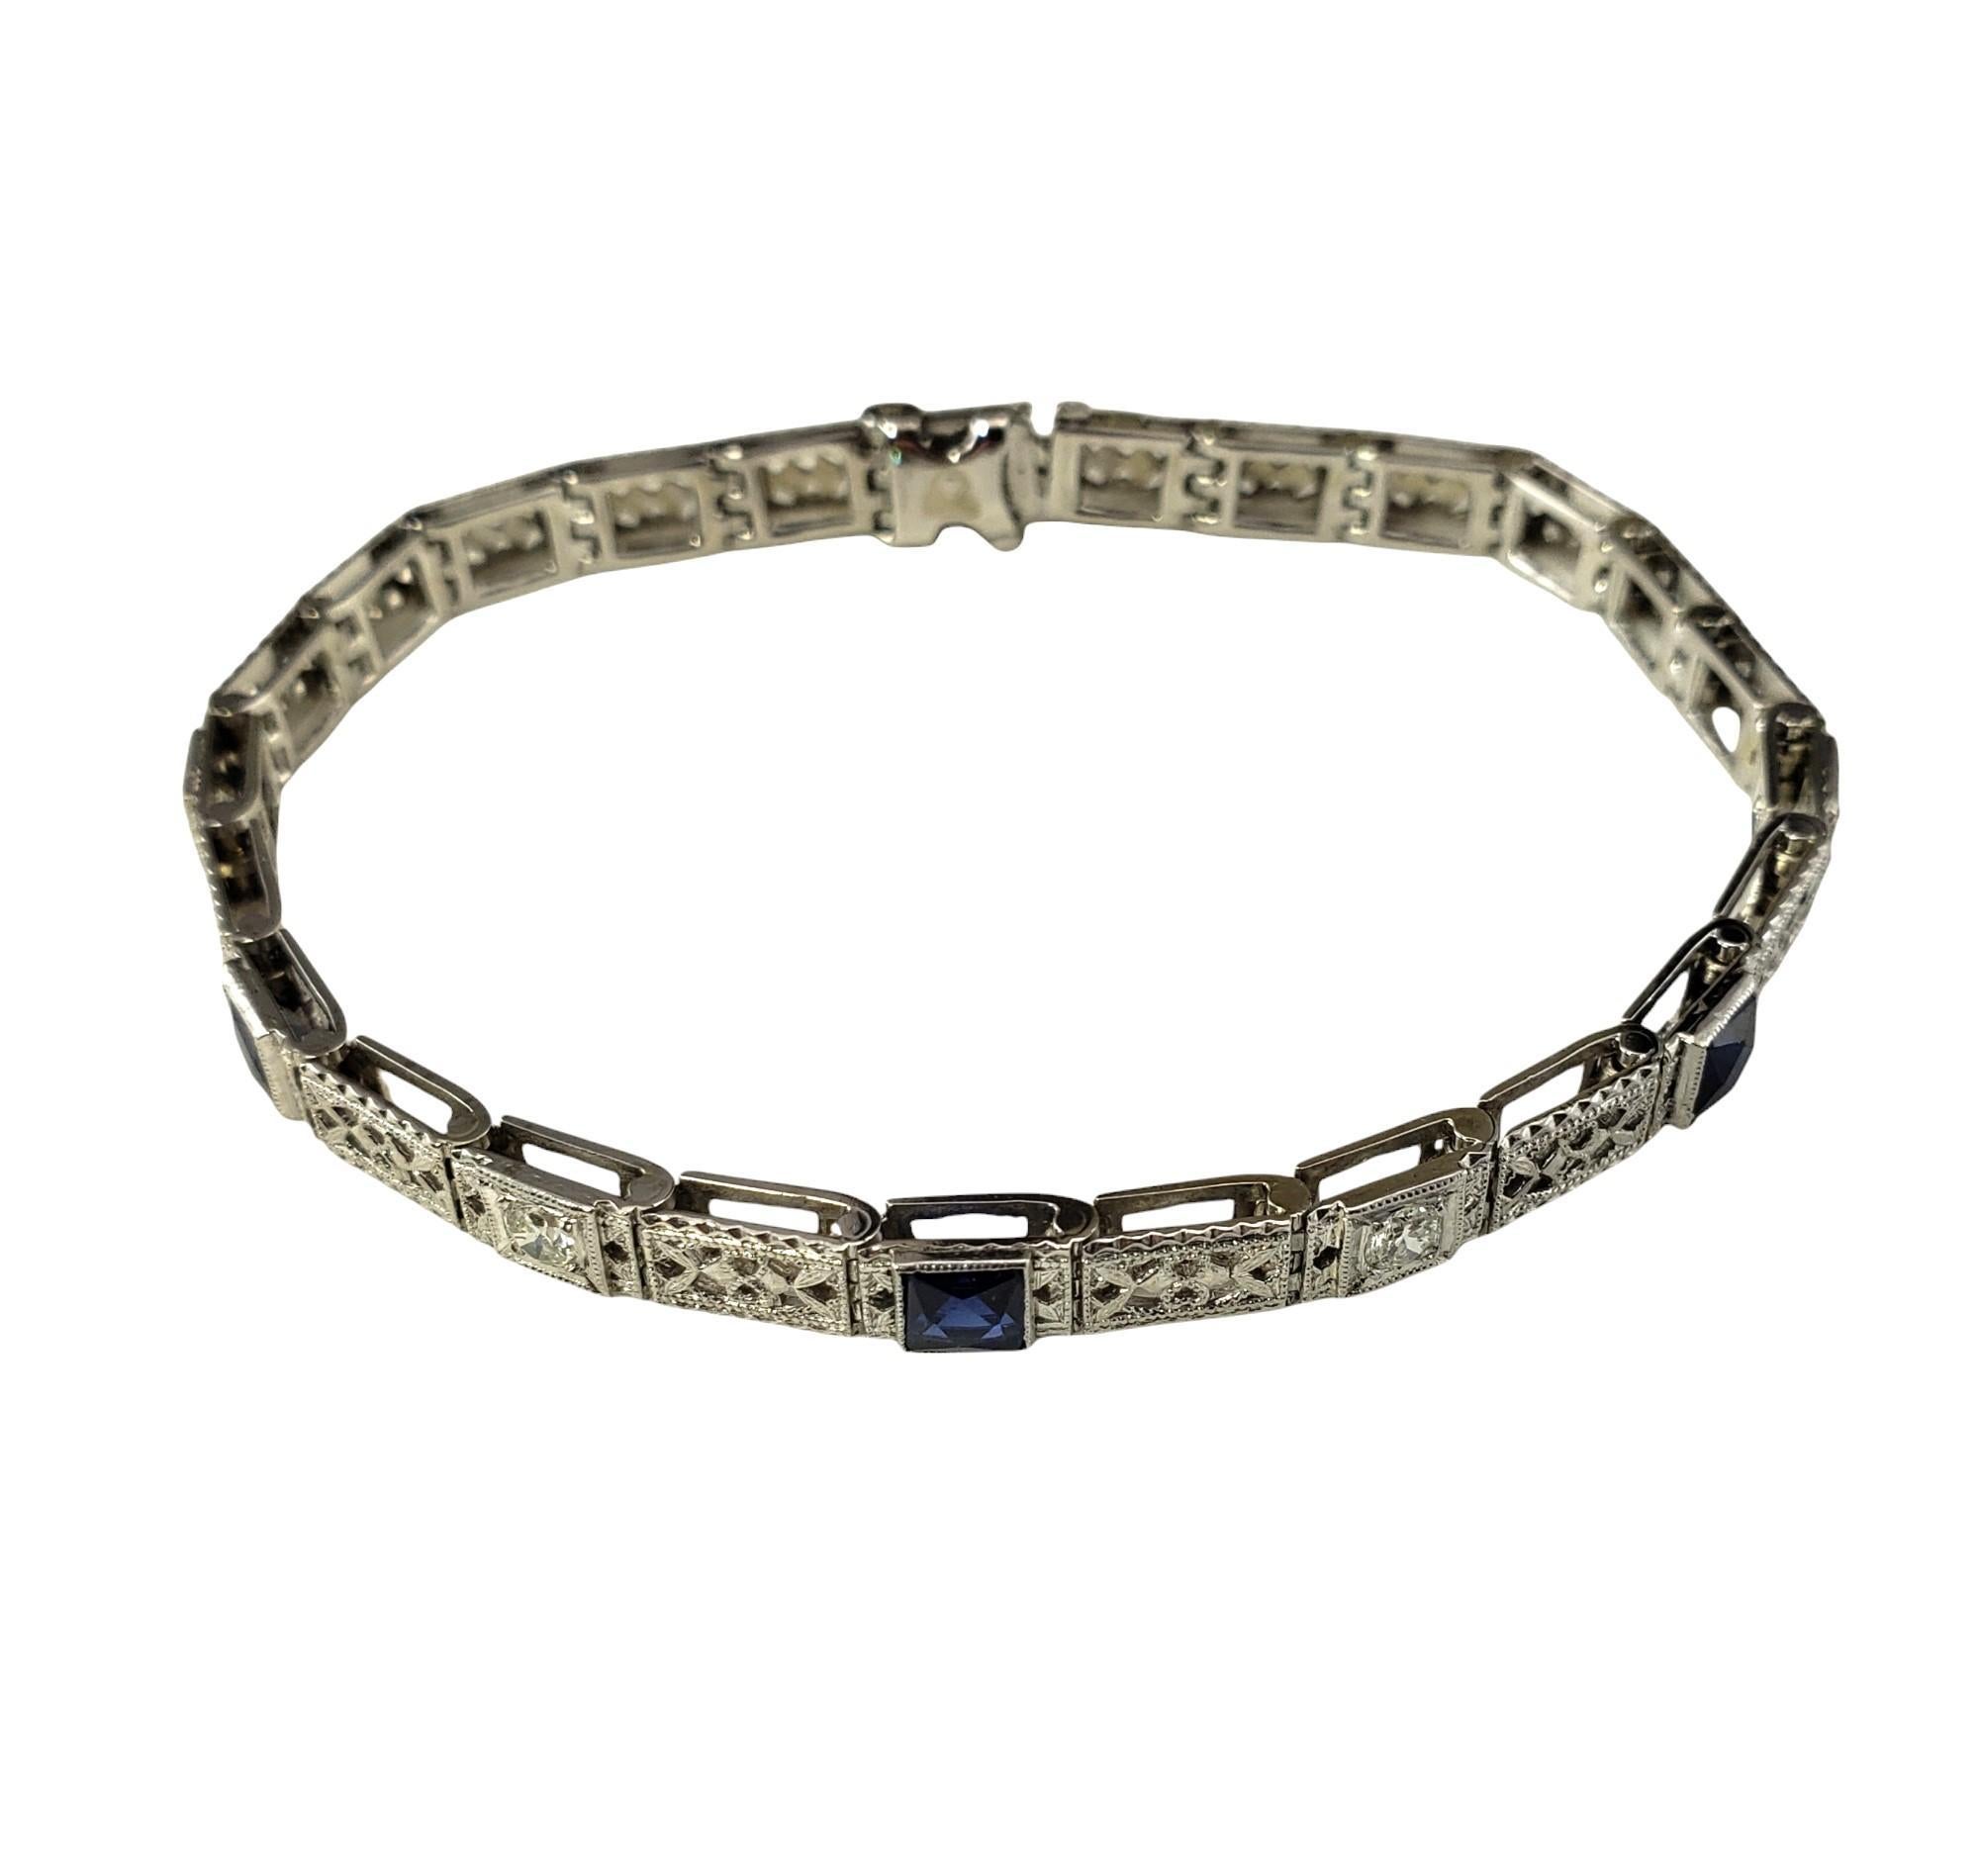 Bracelet Vintage en or blanc 14K avec saphirs et diamants créés en laboratoire-

Ce magnifique bracelet présente trois saphirs carrés créés en laboratoire et quatre diamants ronds de taille brillant, sertis dans un filigrane d'or blanc 14K